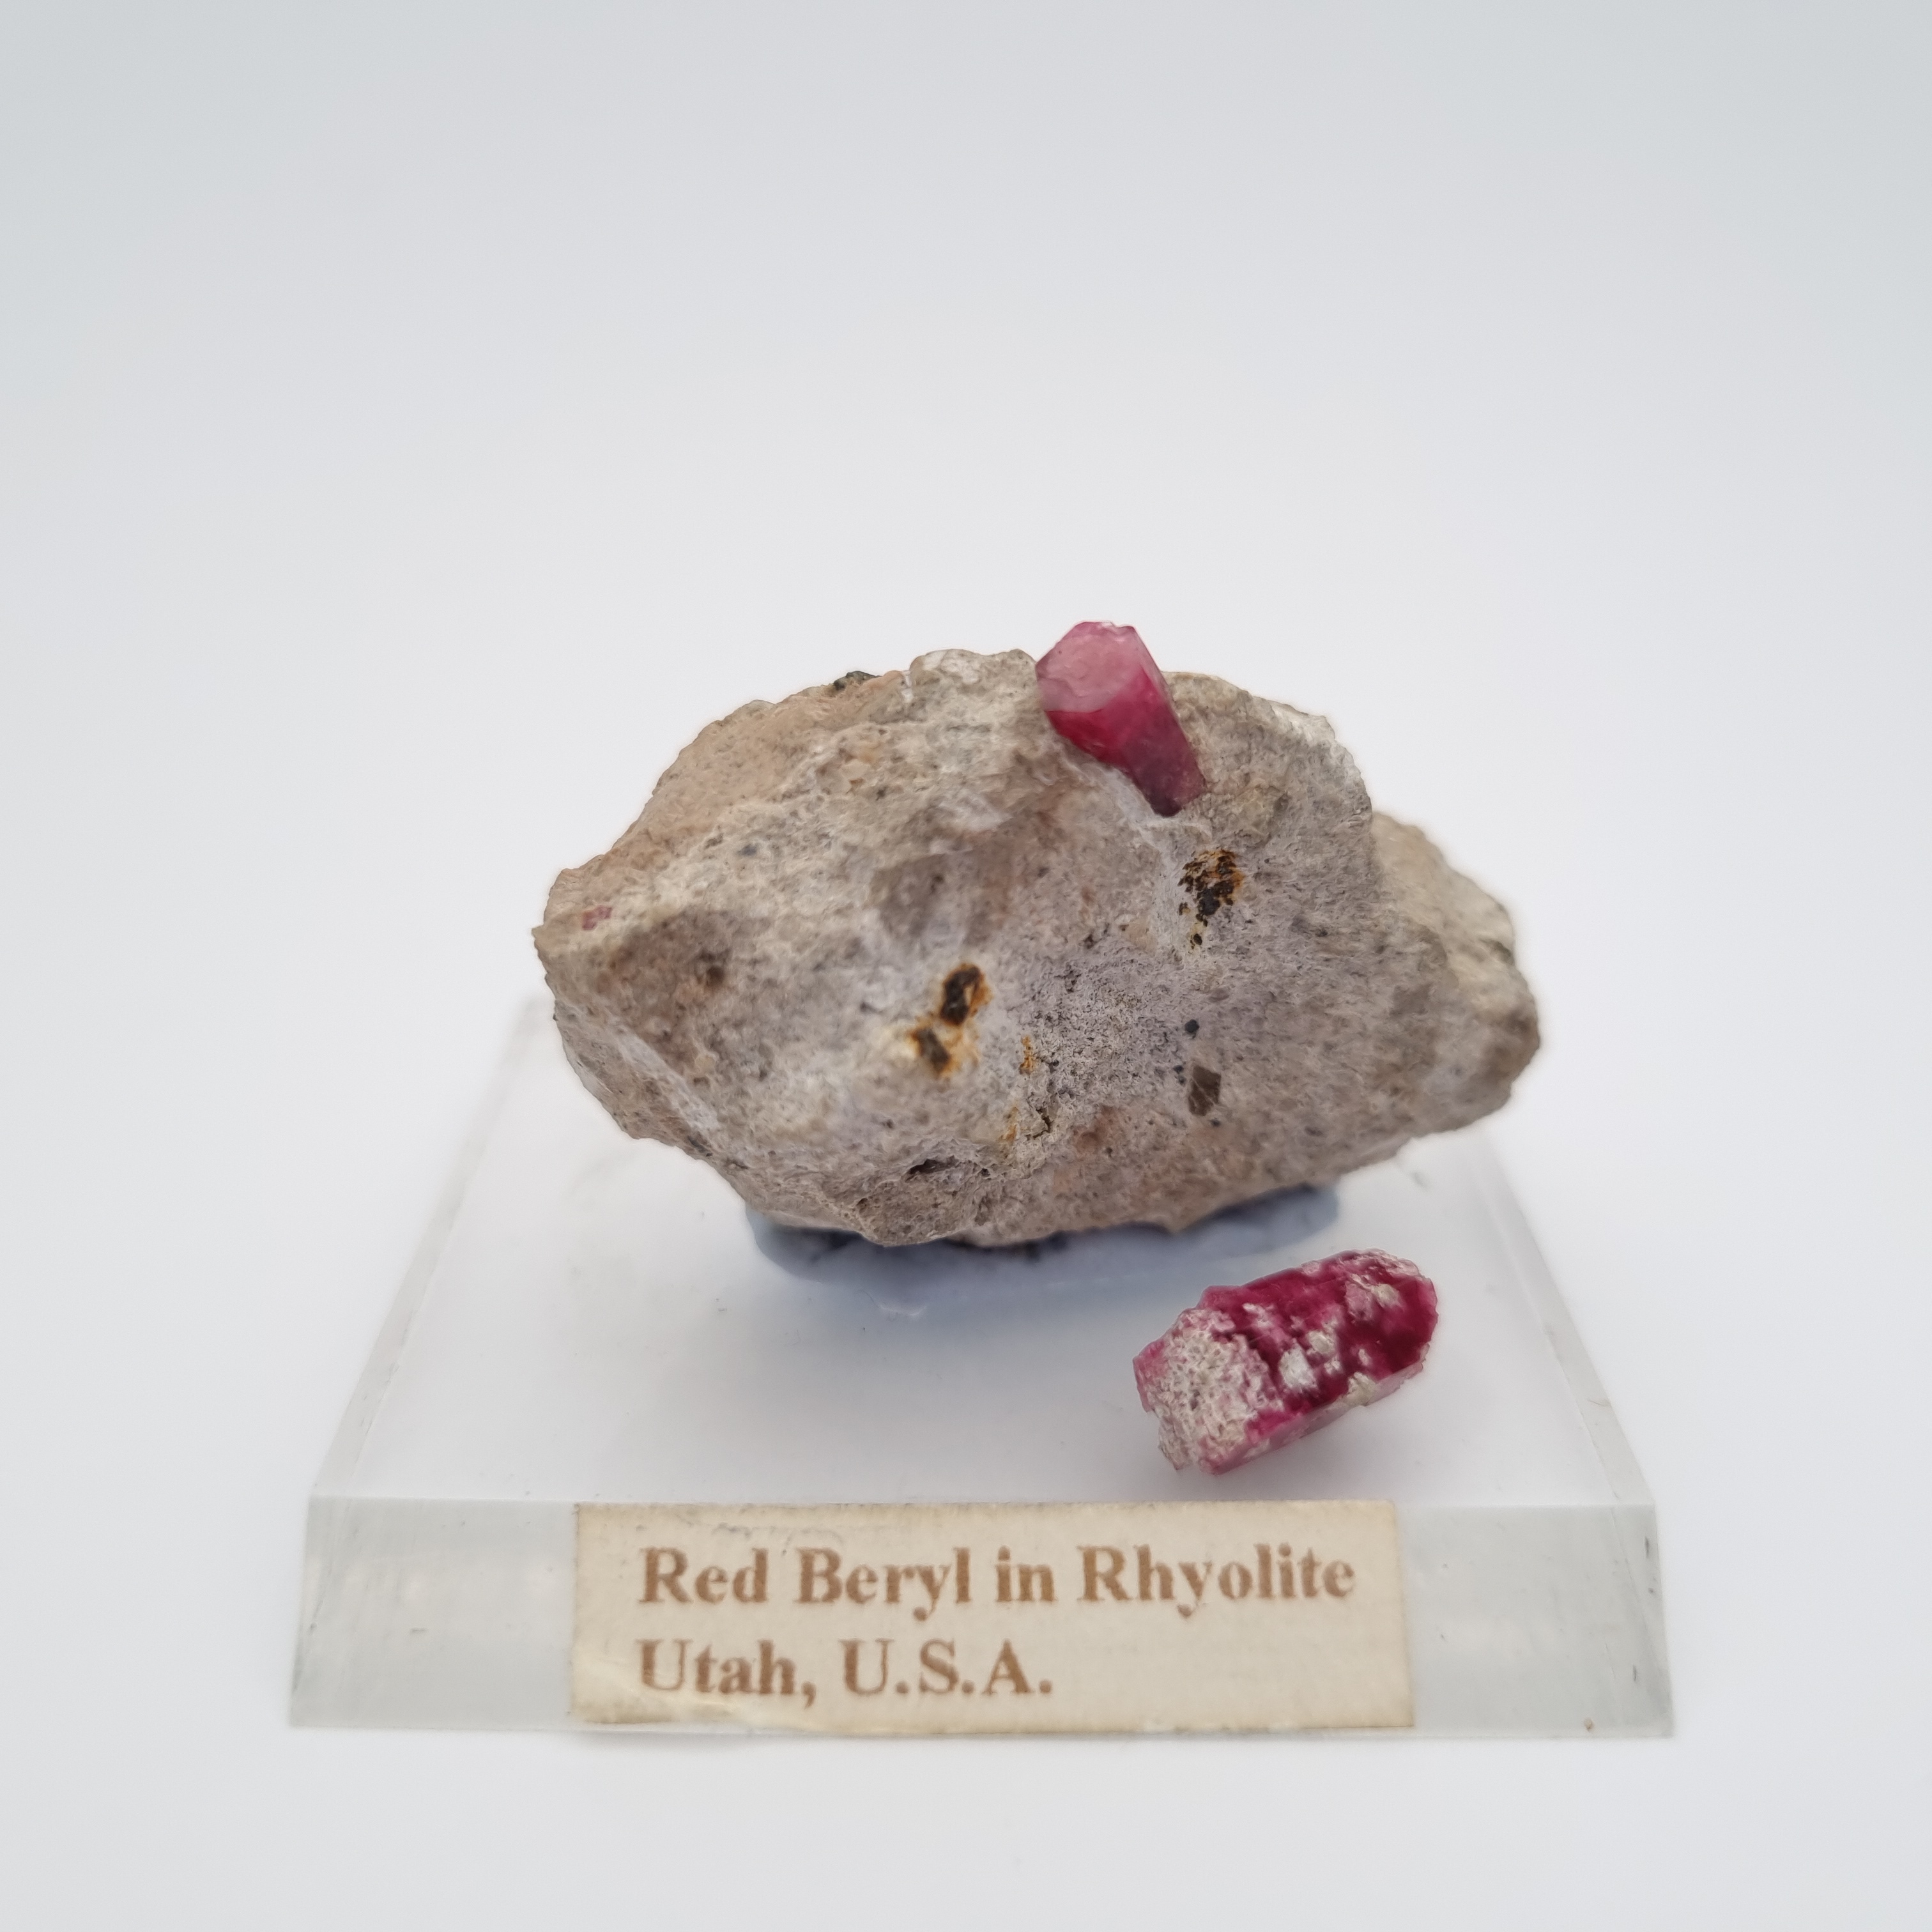 Red beryl crystal in rhyolite